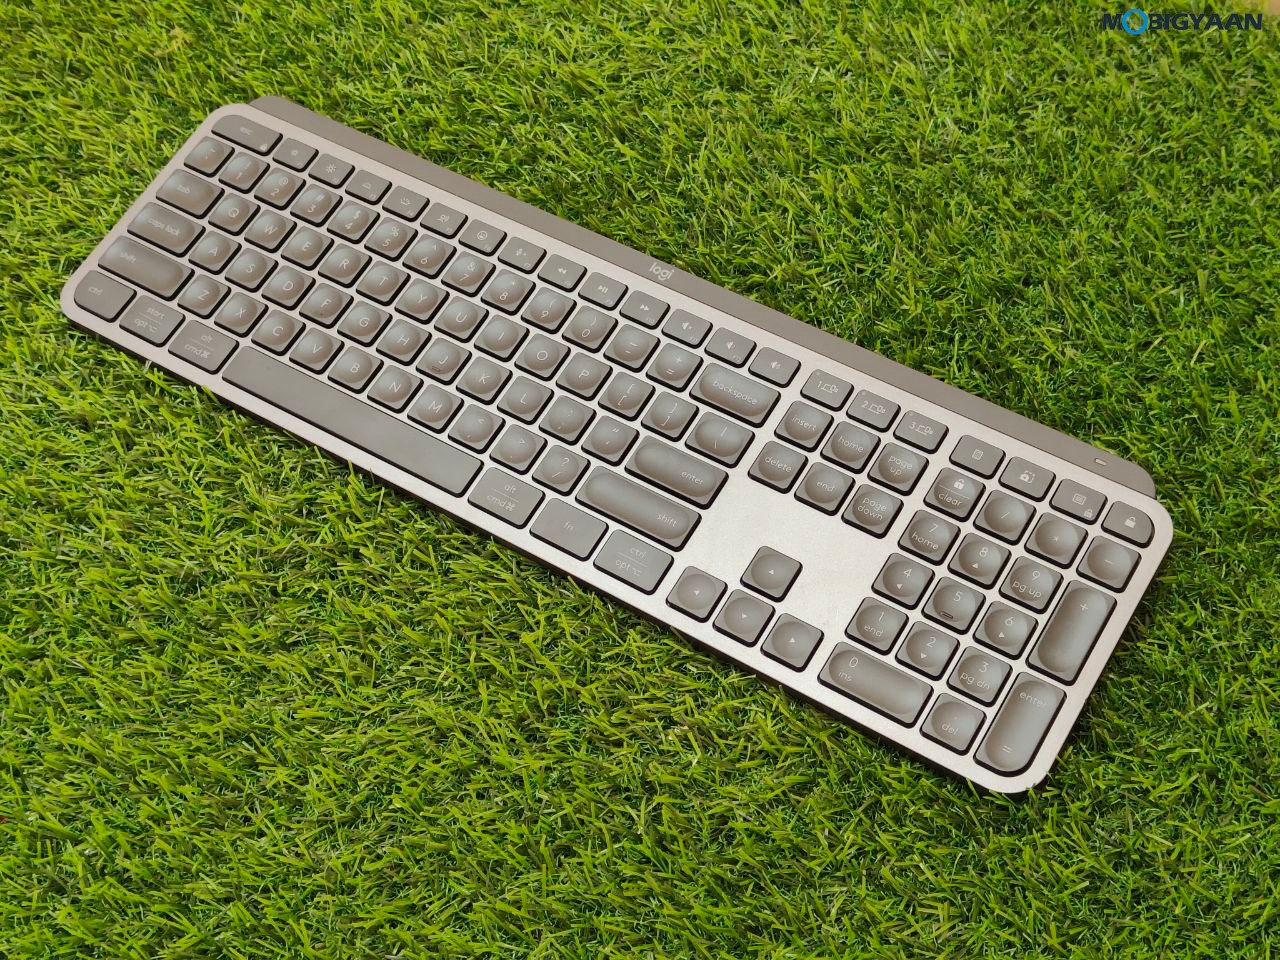 Logitech MX Keys S Review Wireless Keyboard Design Build Quality 24